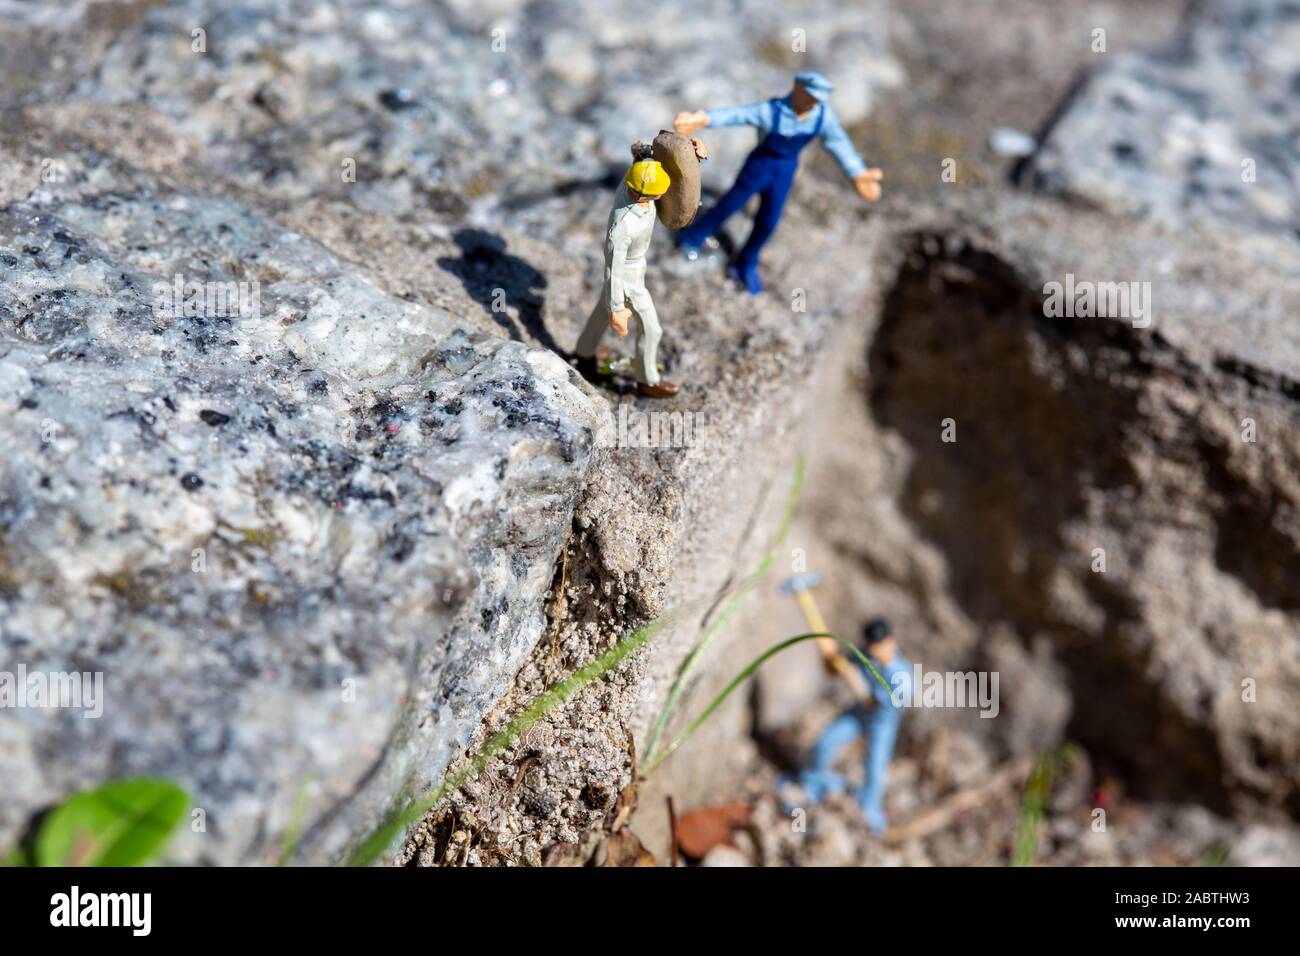 Lavoratore in miniatura con un martello che lavora in una cava, mentre un istruttore che dà ordini e altri lavoratori sono vicini Foto Stock